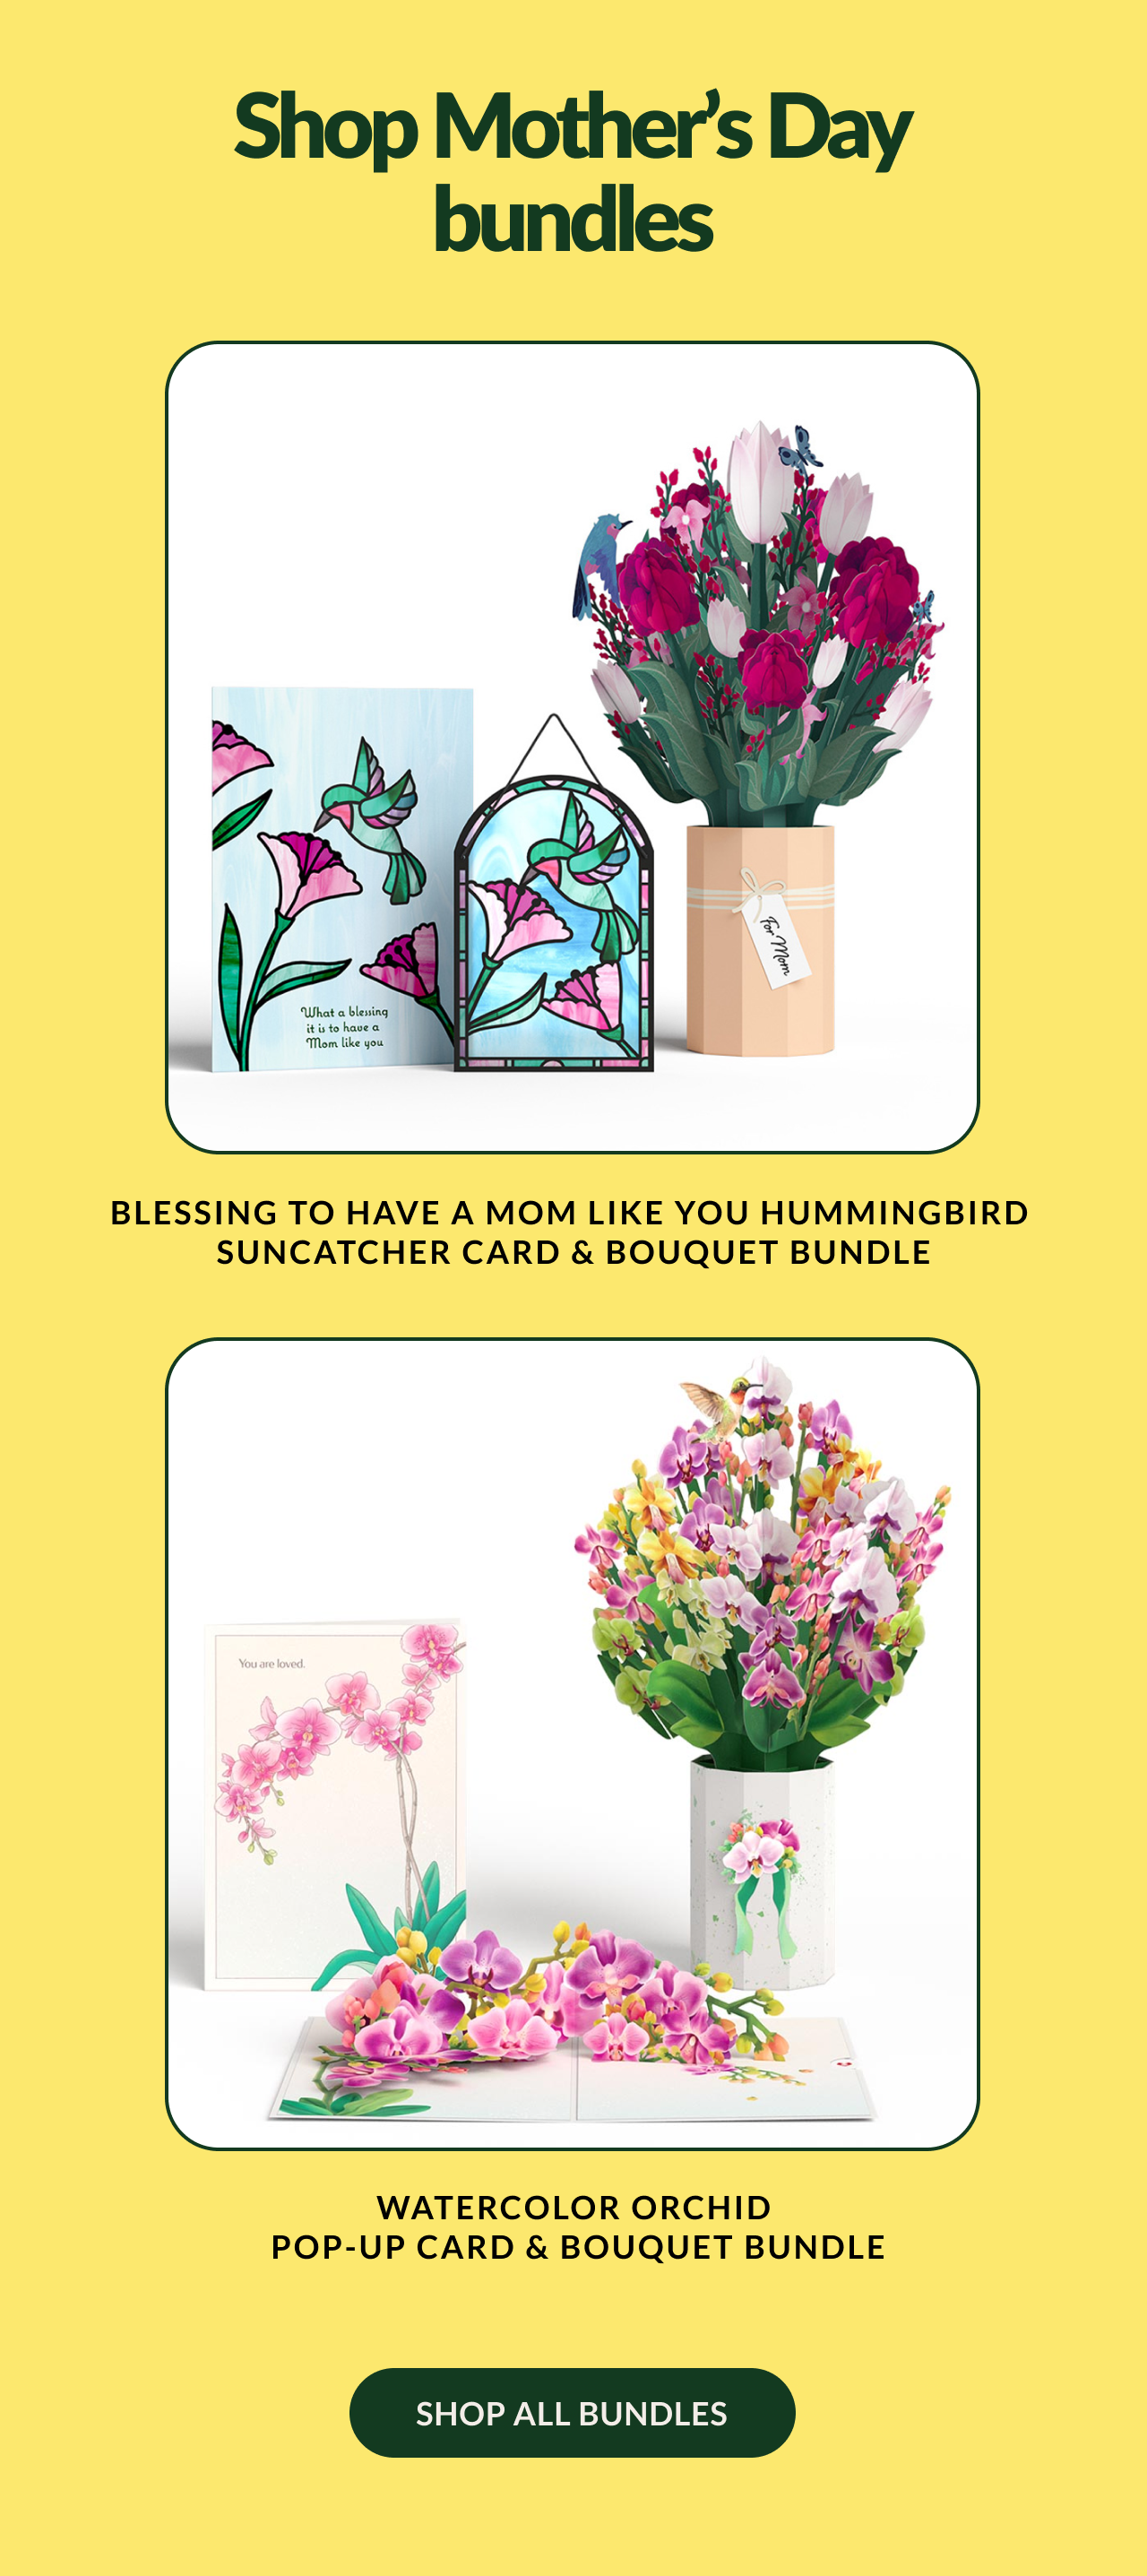 Shop Mother’s Day bundles | BLESSING TO HAVE A MOM LIKE YOU HUMMINGBIRD SUNCATCHER CARD & BOUQUET BUNDLE | WATERCOLOR ORCHID POP-UP CARD & BOUQUET BUNDLE | SHOP ALL BUNDLES